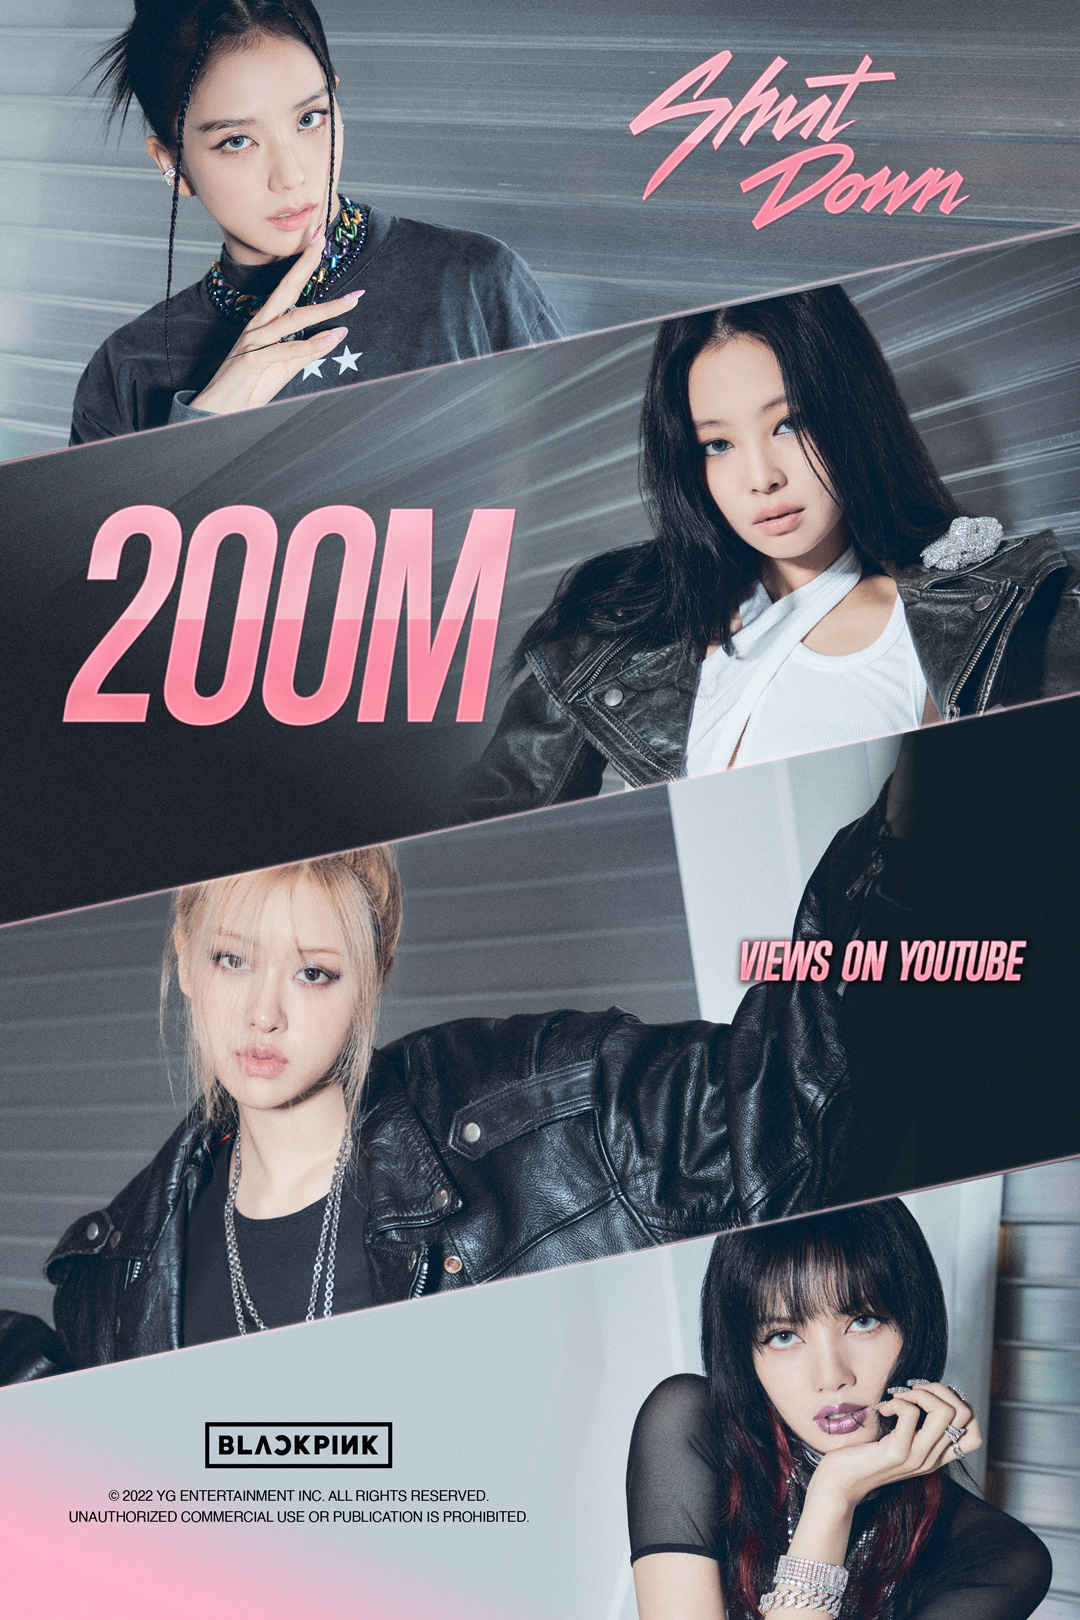 Poster chúc mừng MV “Shut Down” của Blackpink đạt mốc 200 triệu lượt xem. Ảnh: @ygent_official